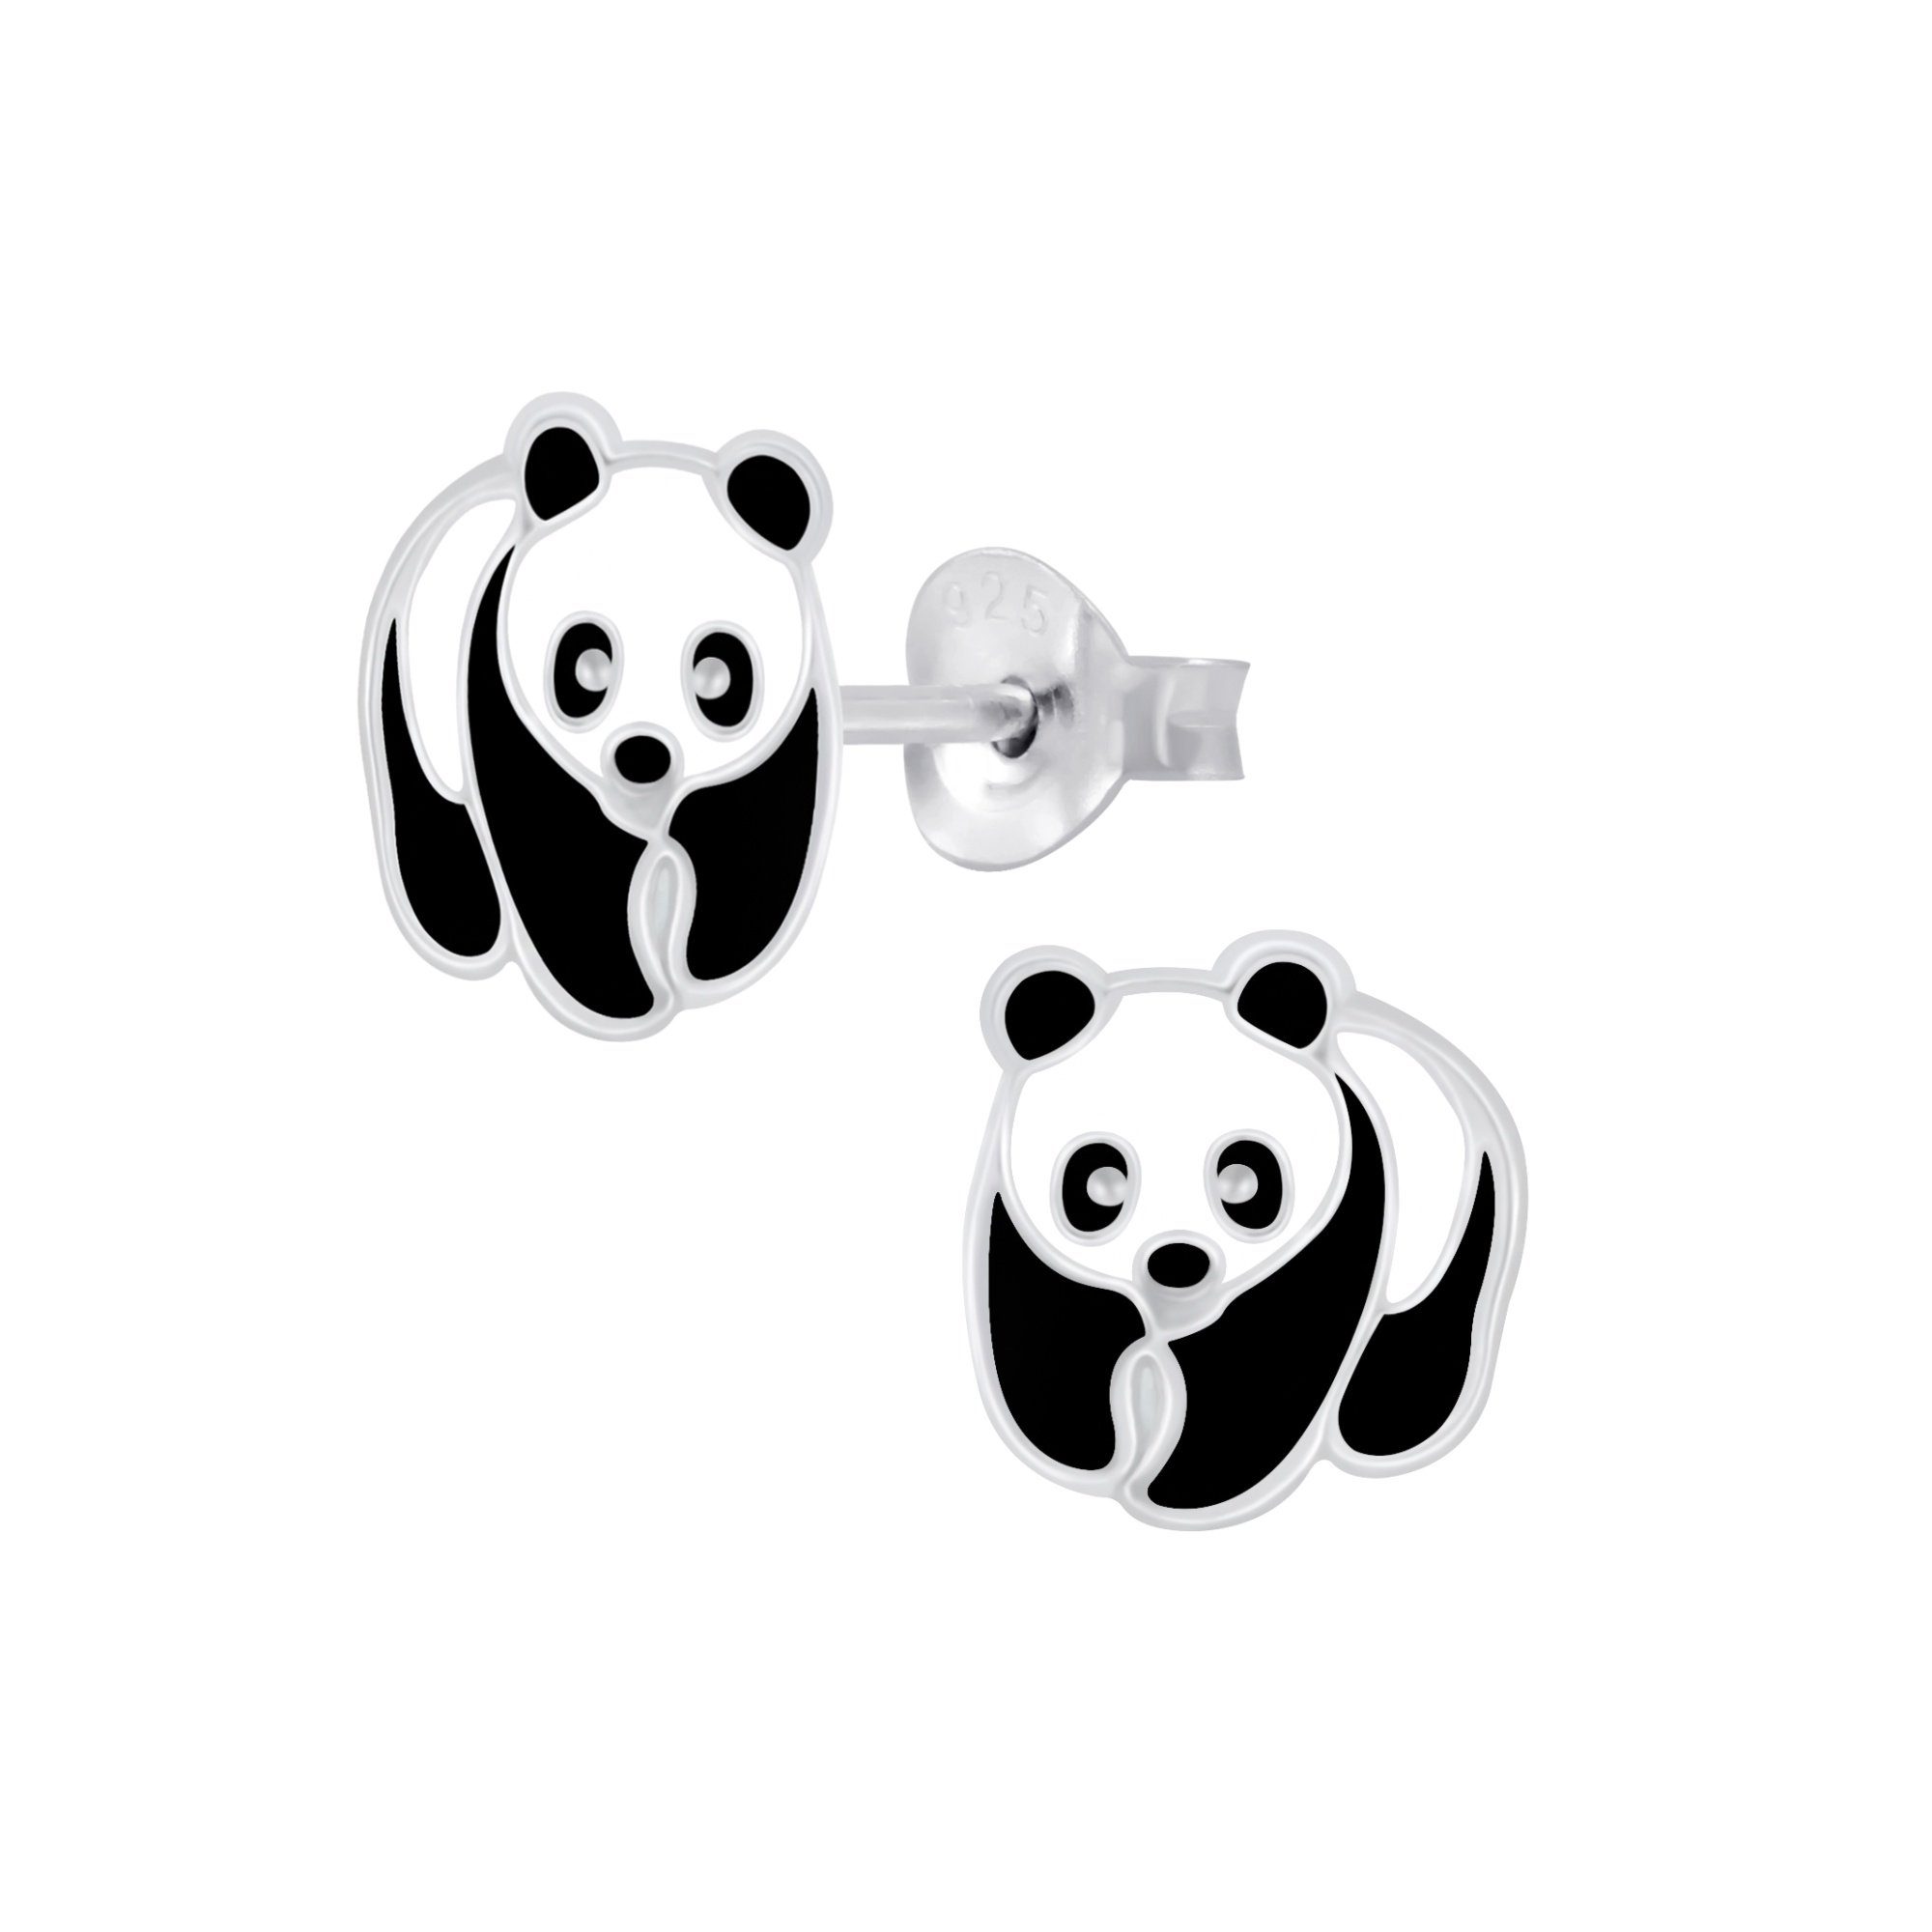 schmuck23 Paar Ohrstecker Kinder Ohrringe Panda Bär 925 Silber, Kinderschmuck Mädchen Geschenk echte Silberohrringe